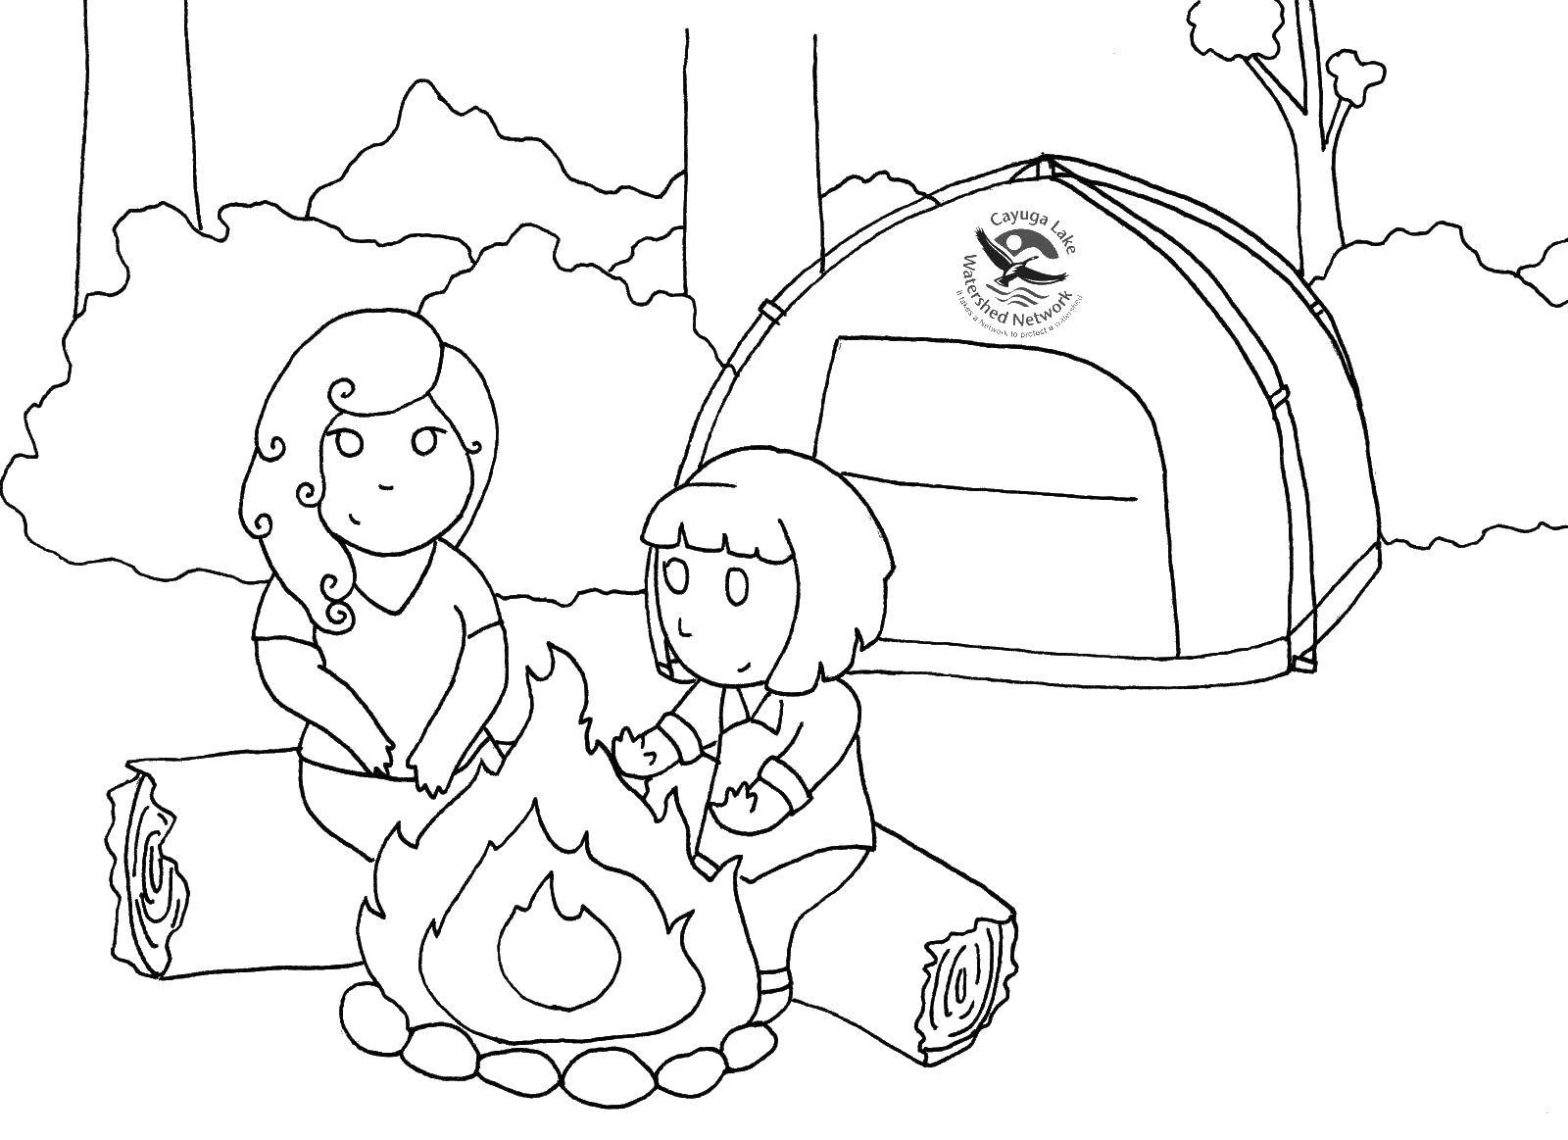 Дочка и мама отдыхают на природе, рядом с палаткой костром (отдых, мама, дочка, костер)